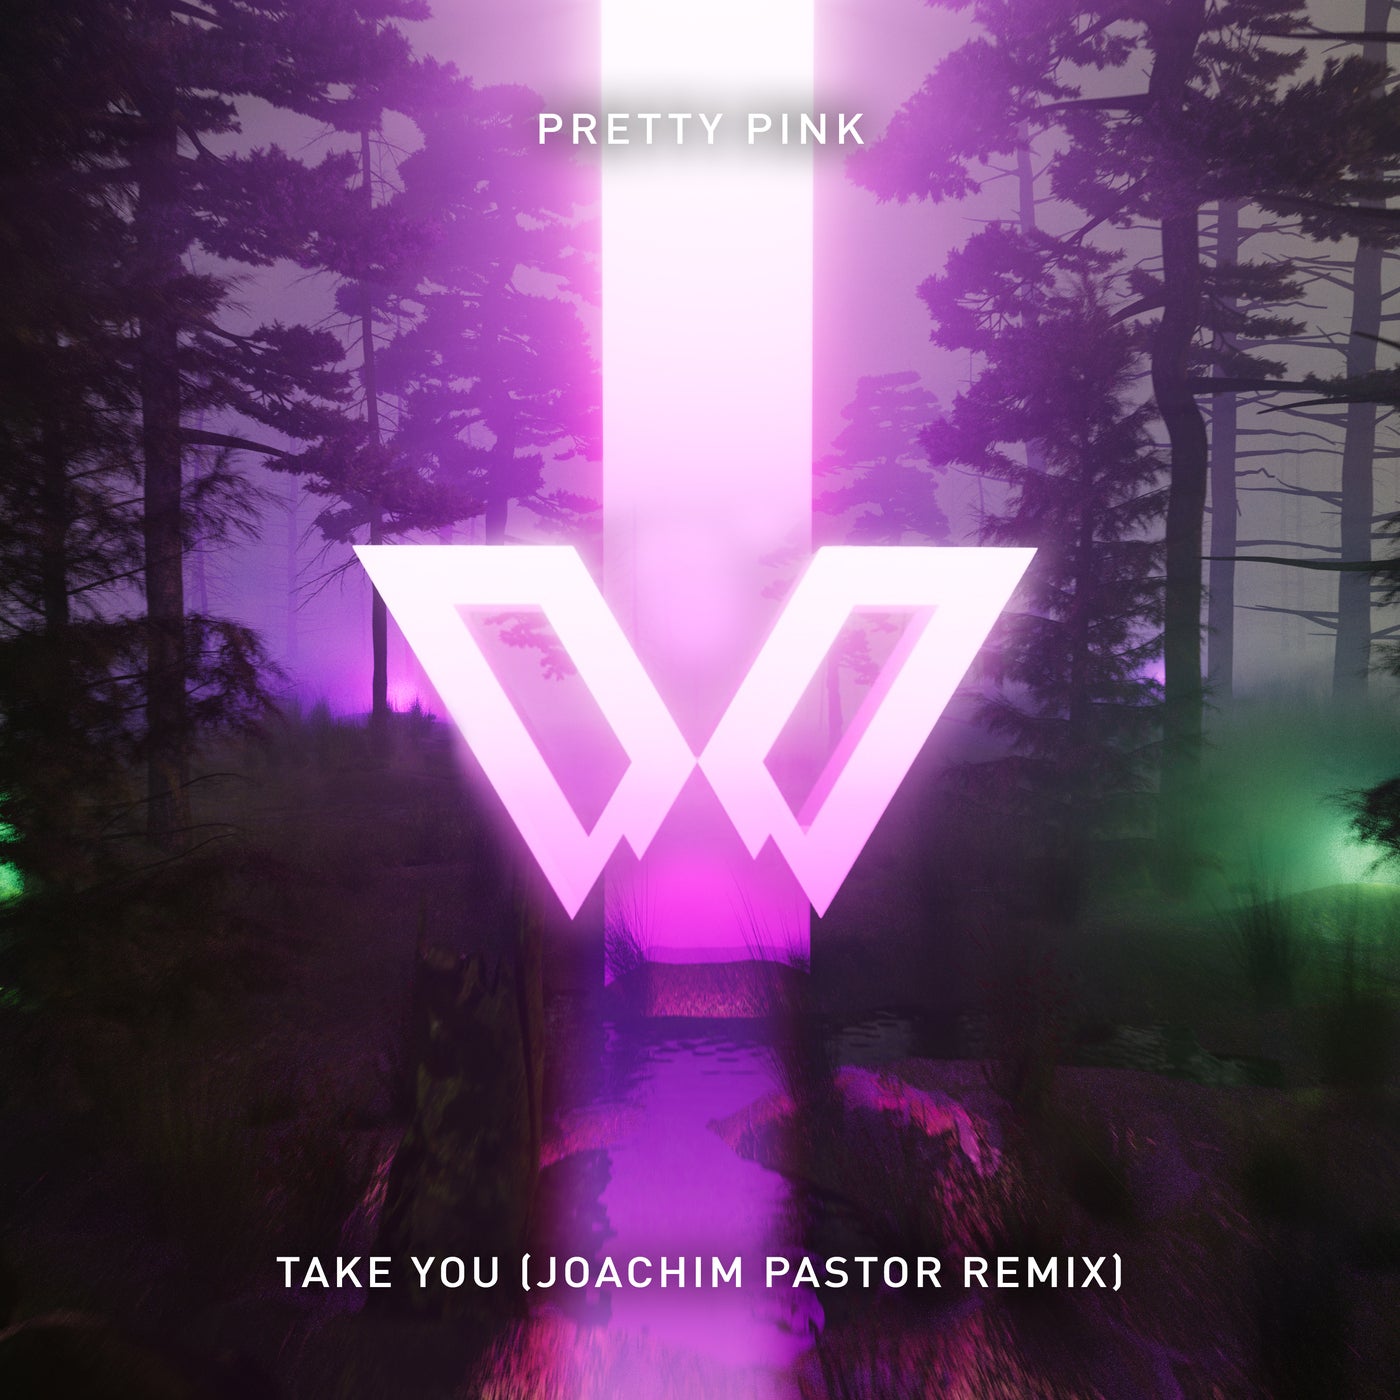 Pretty Pink - Take You (Joachim Pastor Remix)